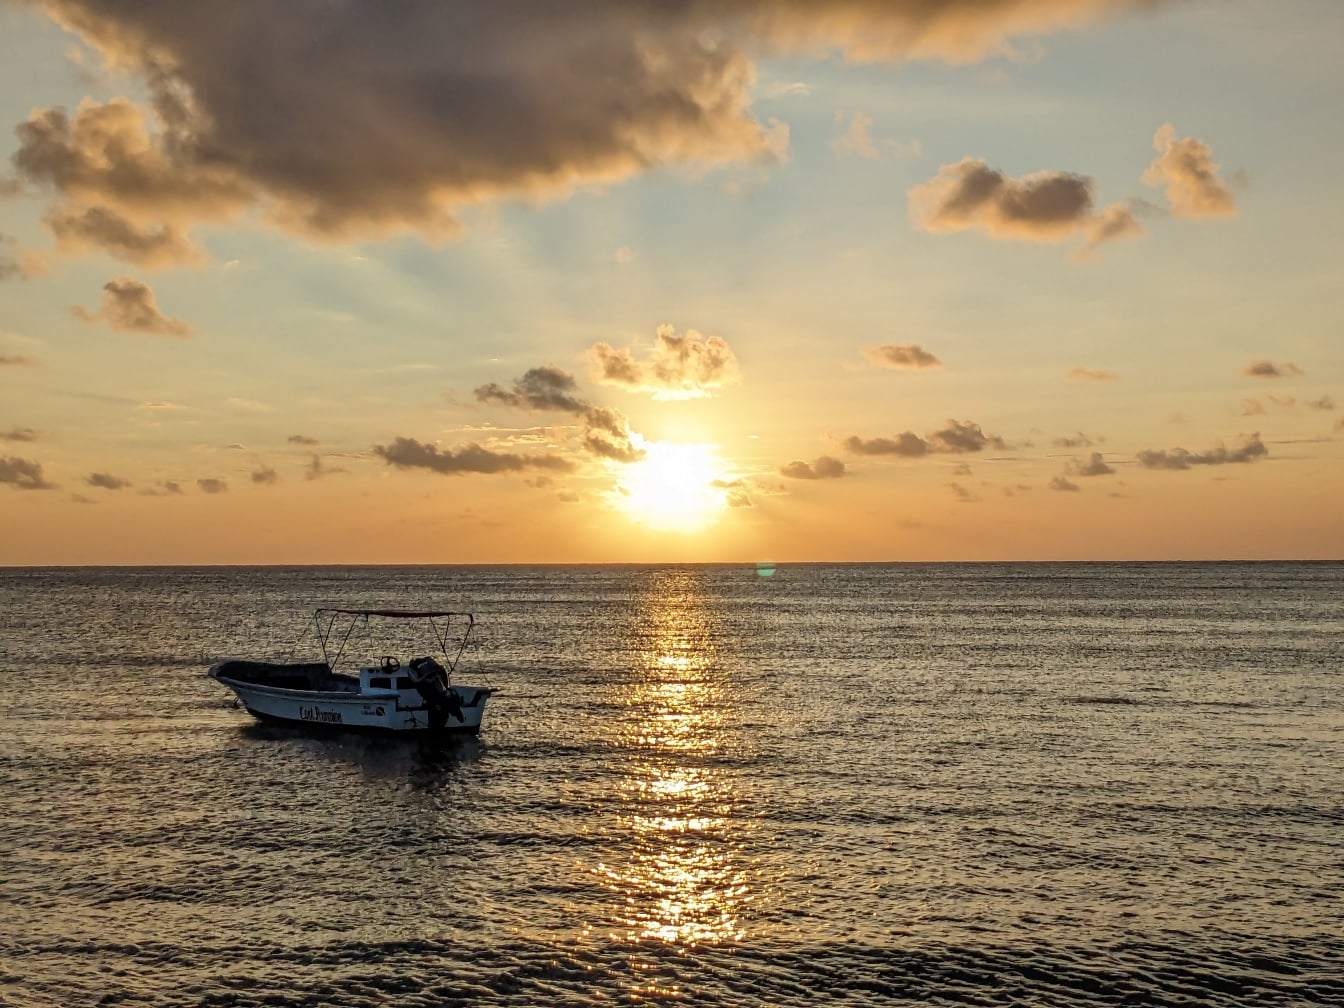 Невеликий човен у морі з яскравими сонячними променями, що відбиваються на морському горизонті на сході сонця